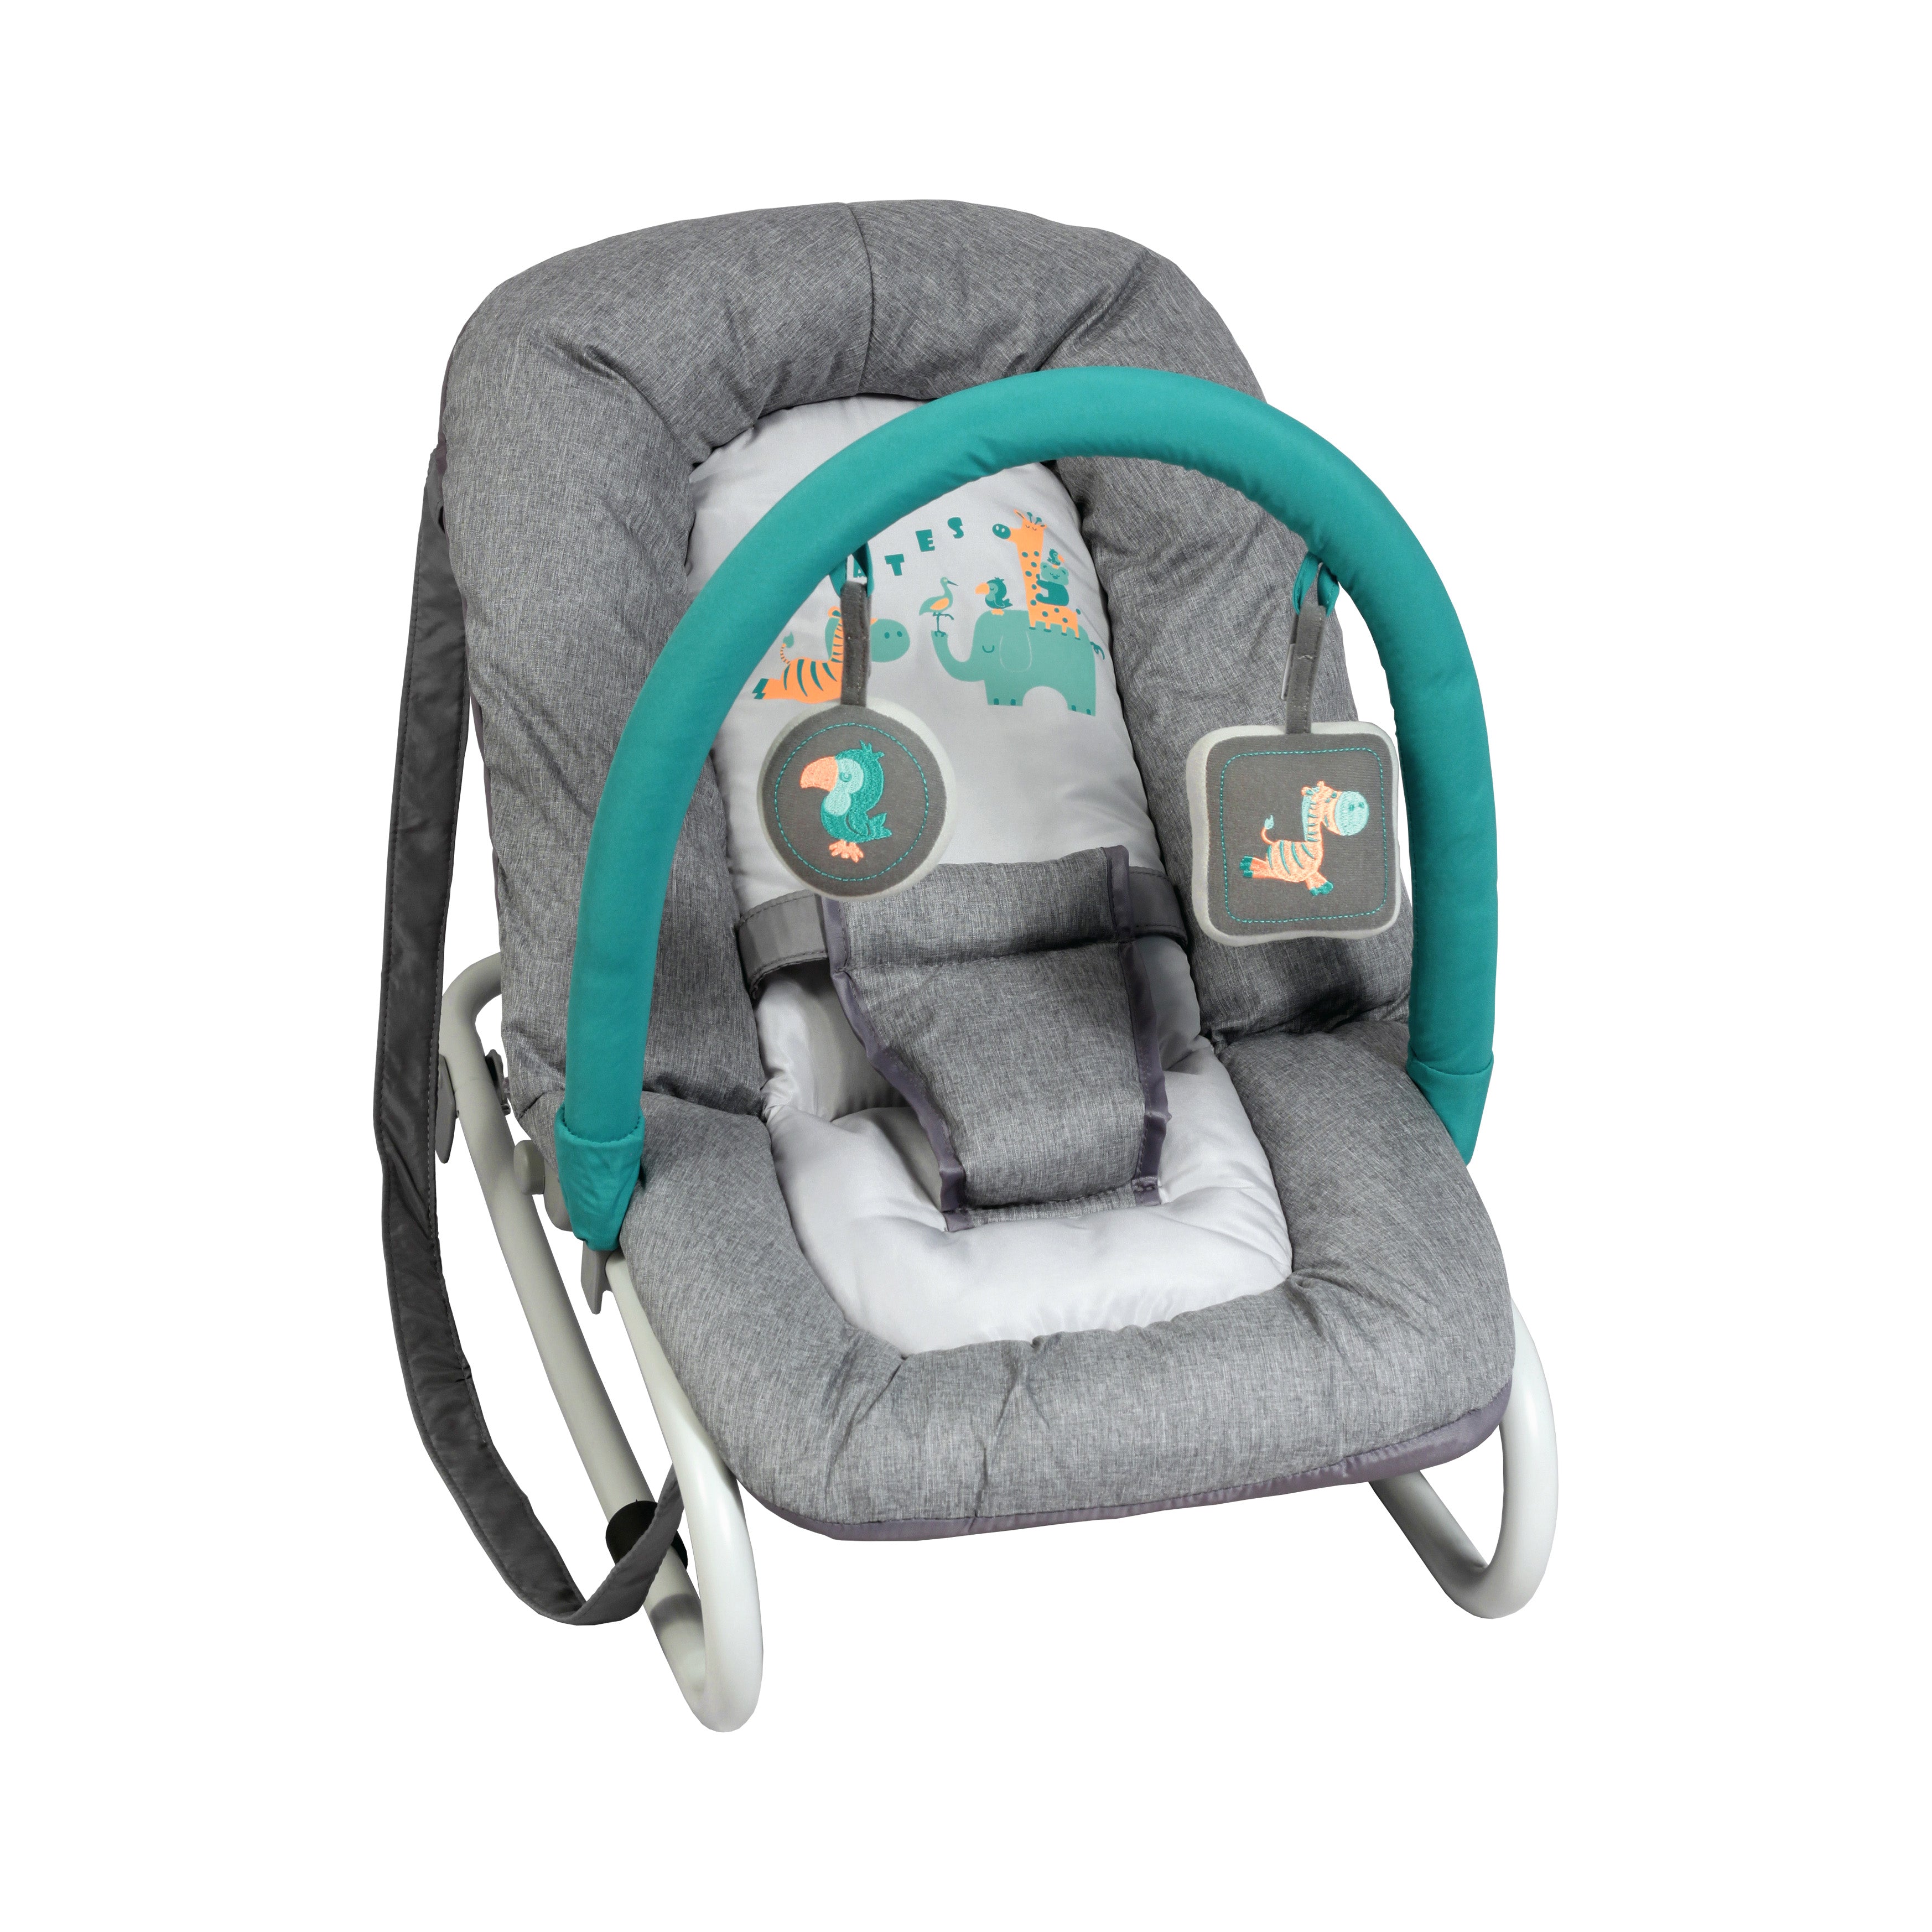 Transat Bébé Luxe avec Arche de Jeux - BAMBISOL - Rose - Inclinable -  Pliable - Fixe ou Balancelle - Cdiscount Puériculture & Eveil bébé